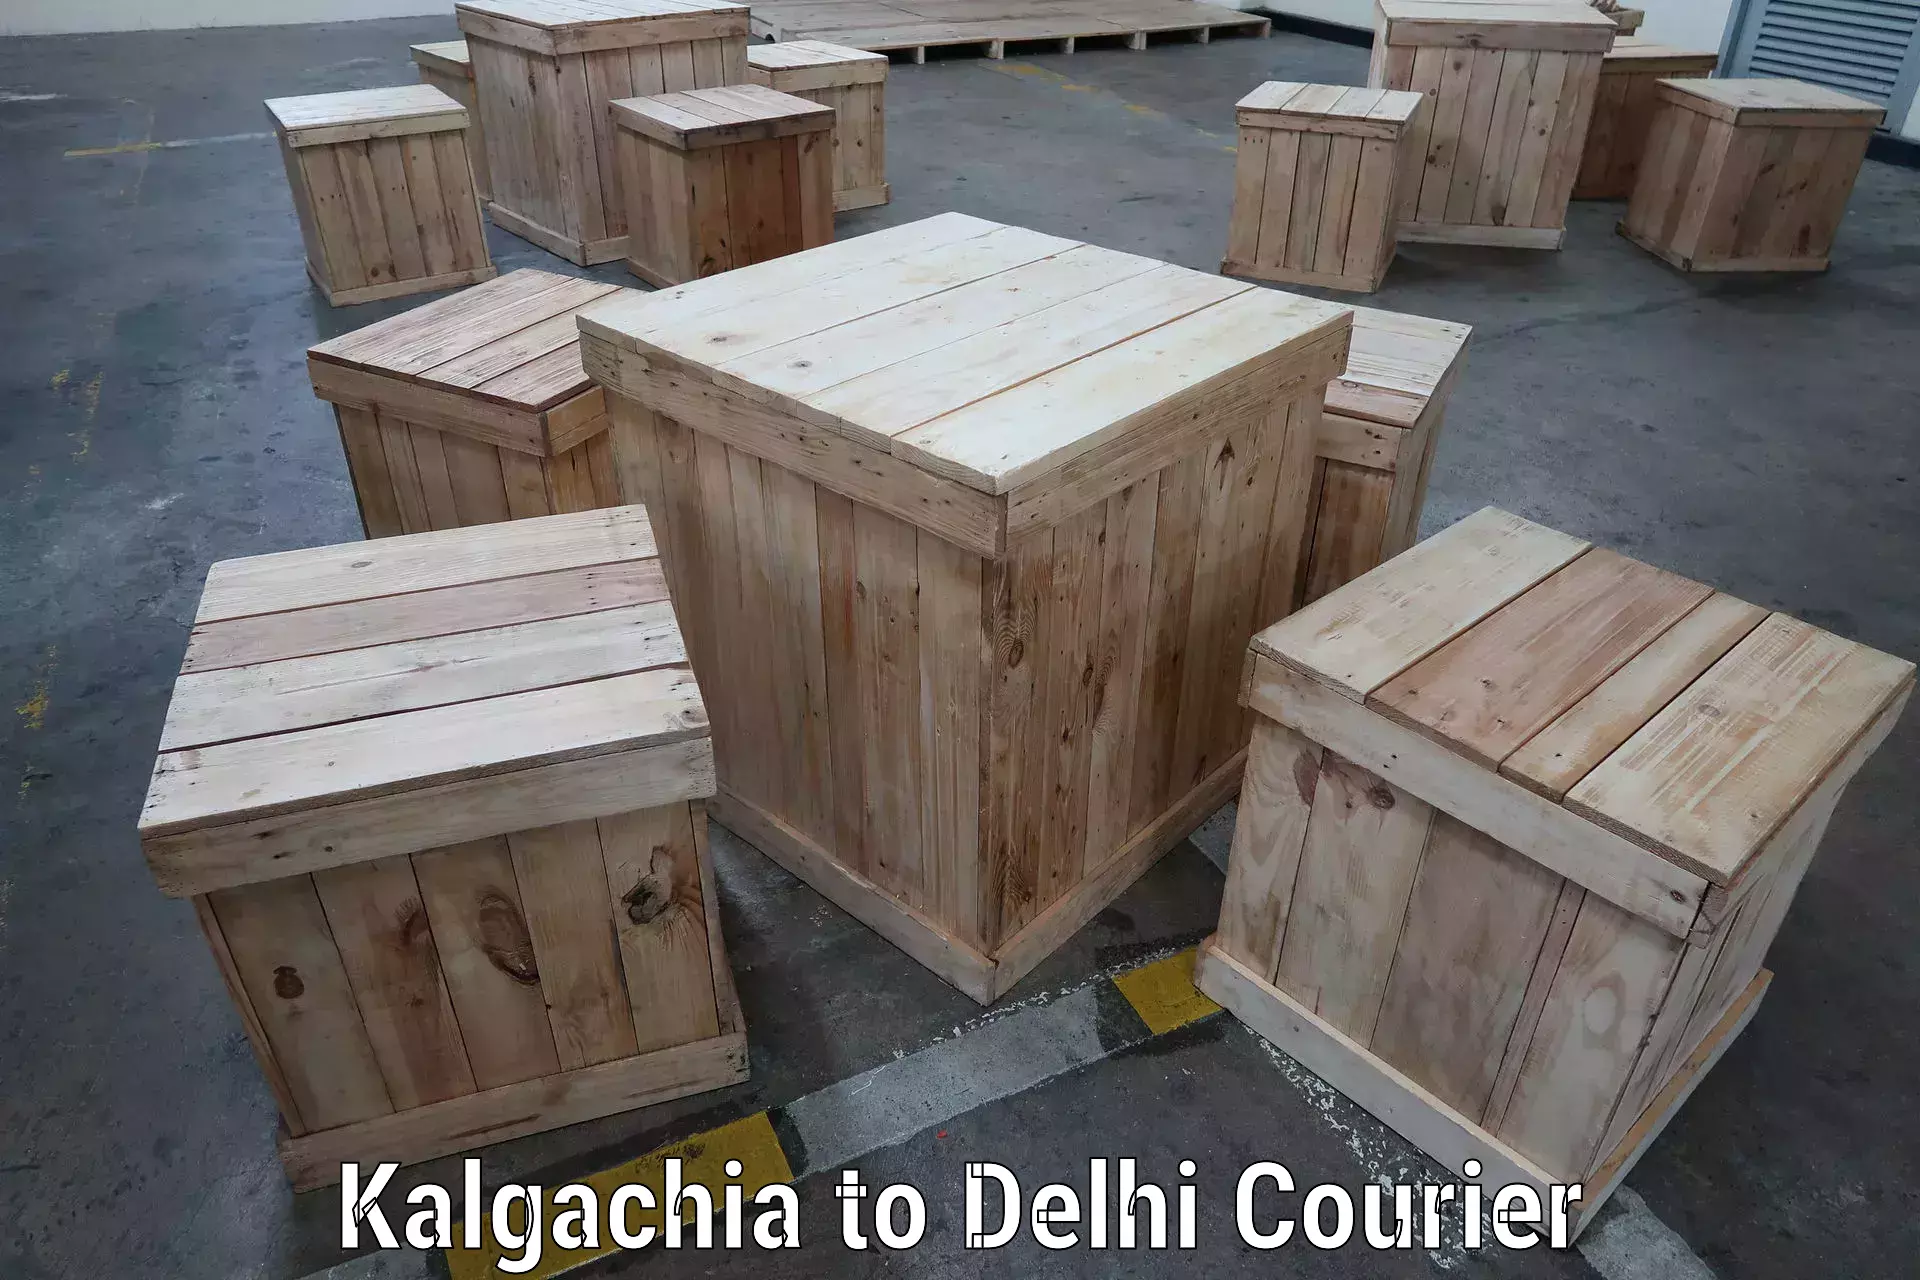 Multi-service courier options in Kalgachia to Krishna Nagar